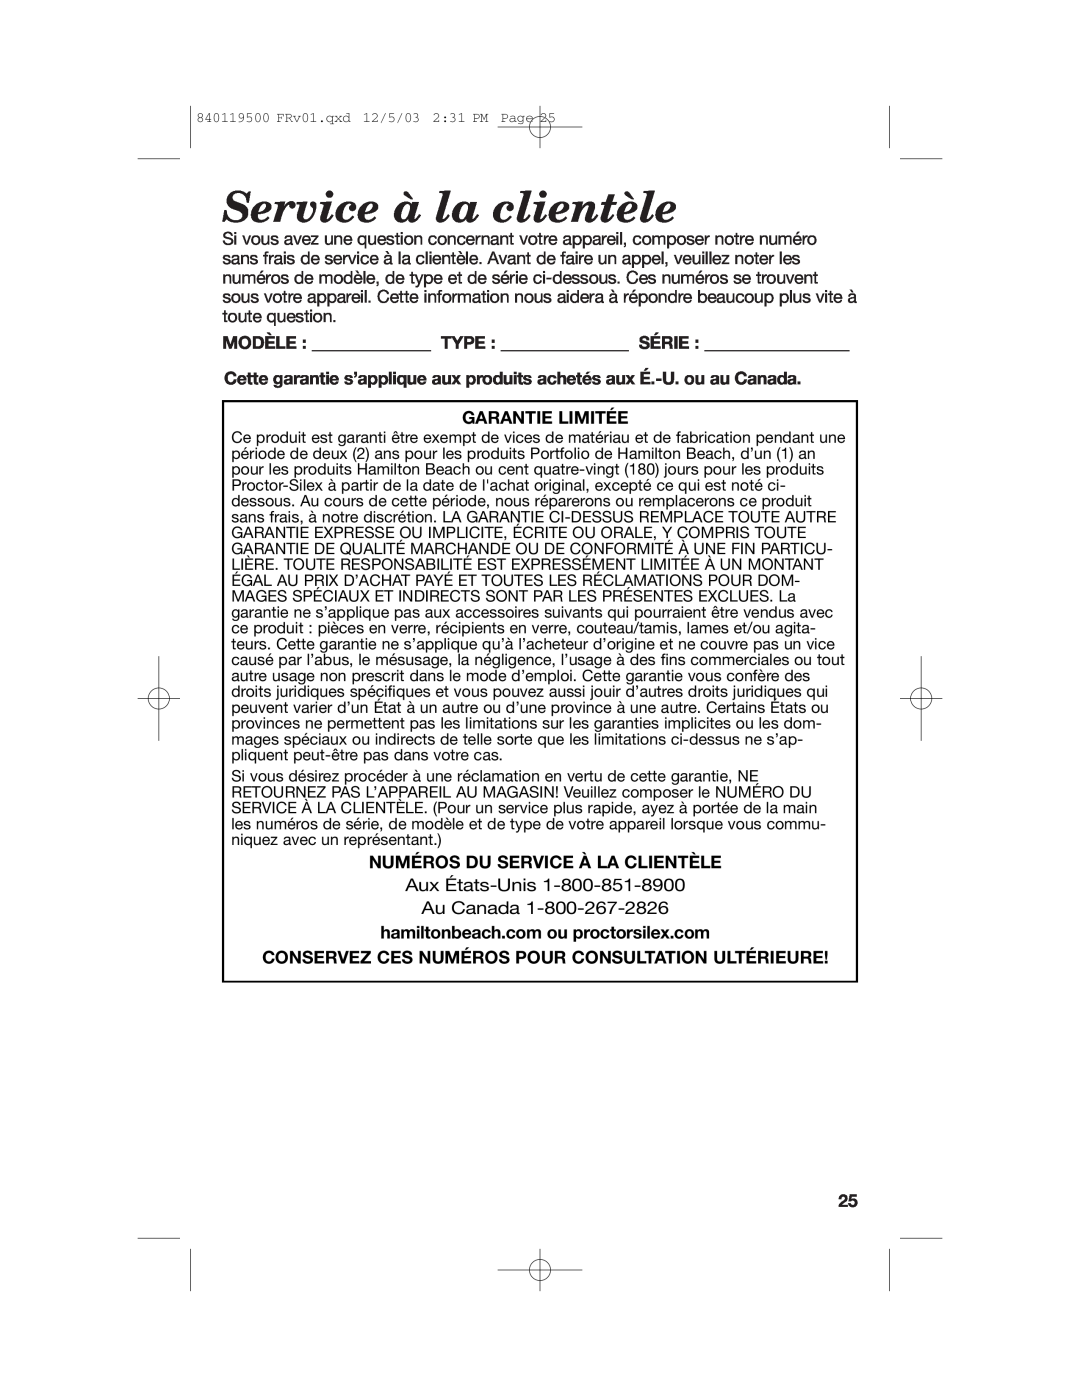 Hamilton Beach 31195 manual Service à la clientèle, Garantie Limitée, Numéros Du Service À La Clientèle 